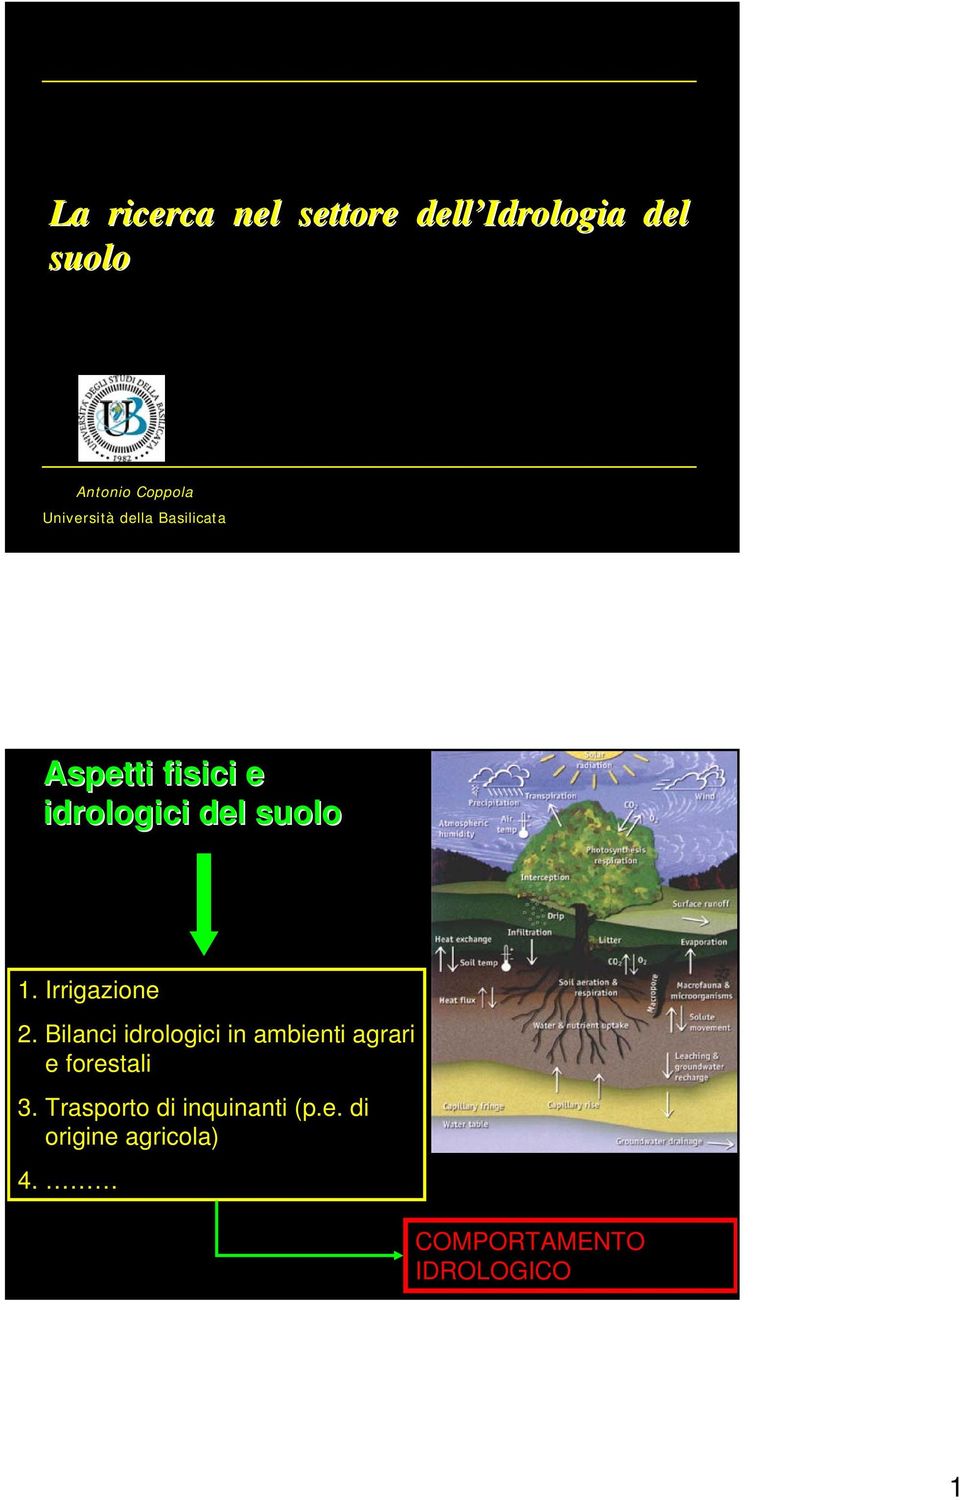 Irrigazione 2. Bilanci idrologici in ambienti agrari e forestali 3.